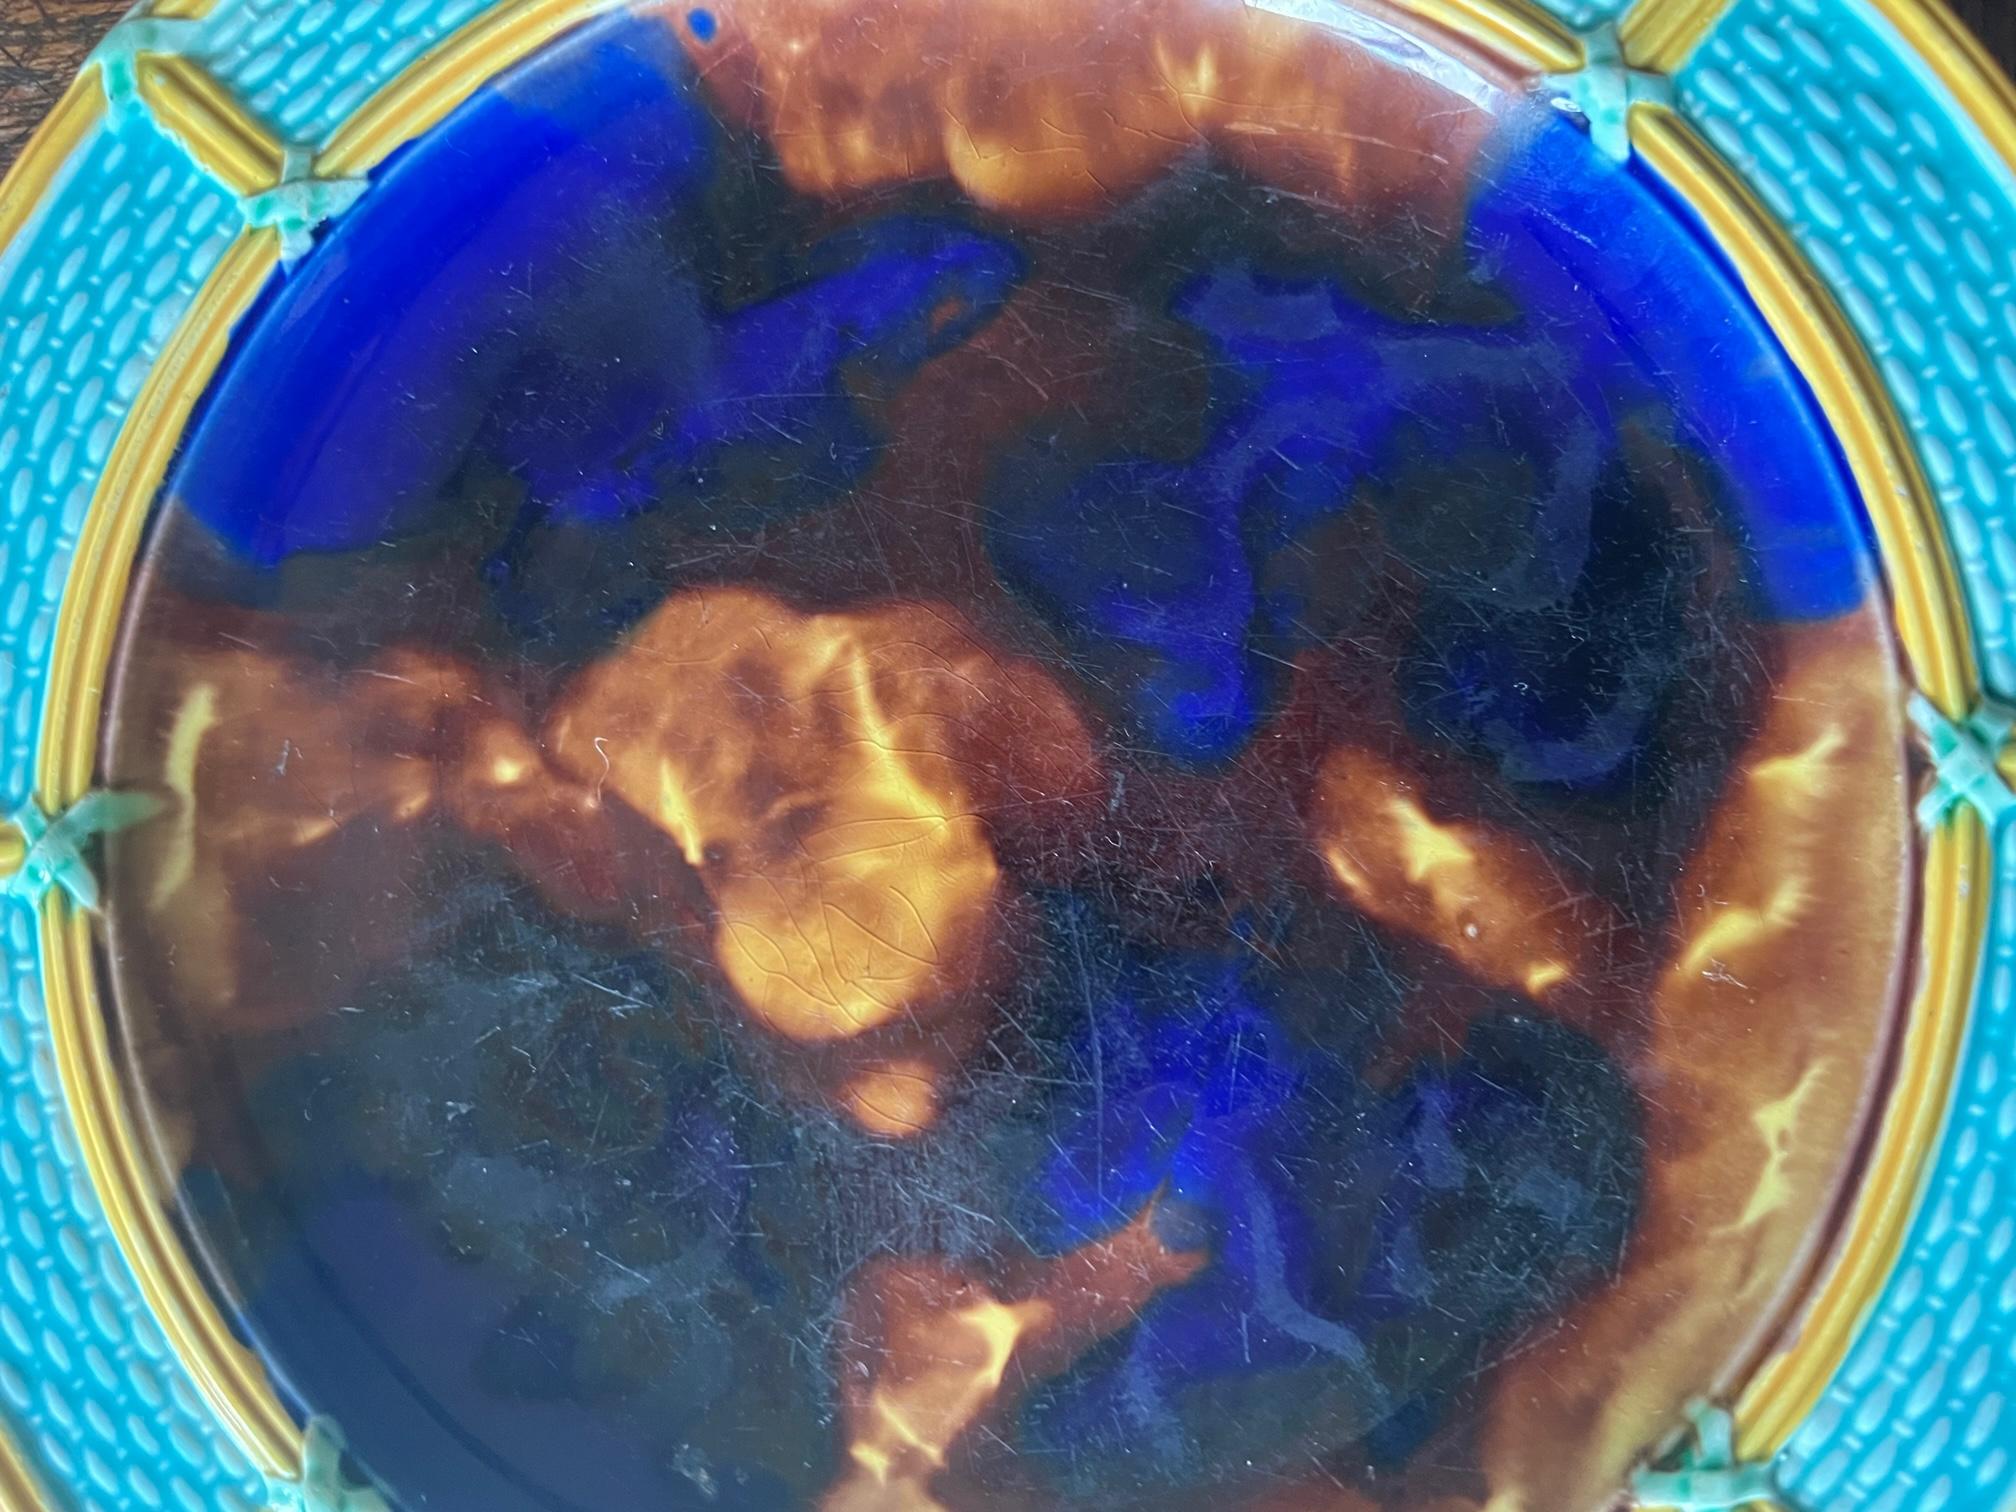 Assiette antique en majolique de Wedgwood décorée d'un bord en vannerie d'un turquoise vibrant et d'un centre en forme d'écaille de tortue bleue. L'assiette est frappée de l'empreinte Wedgwood et comprend la marque imprimée datant l'assiette de 1875.